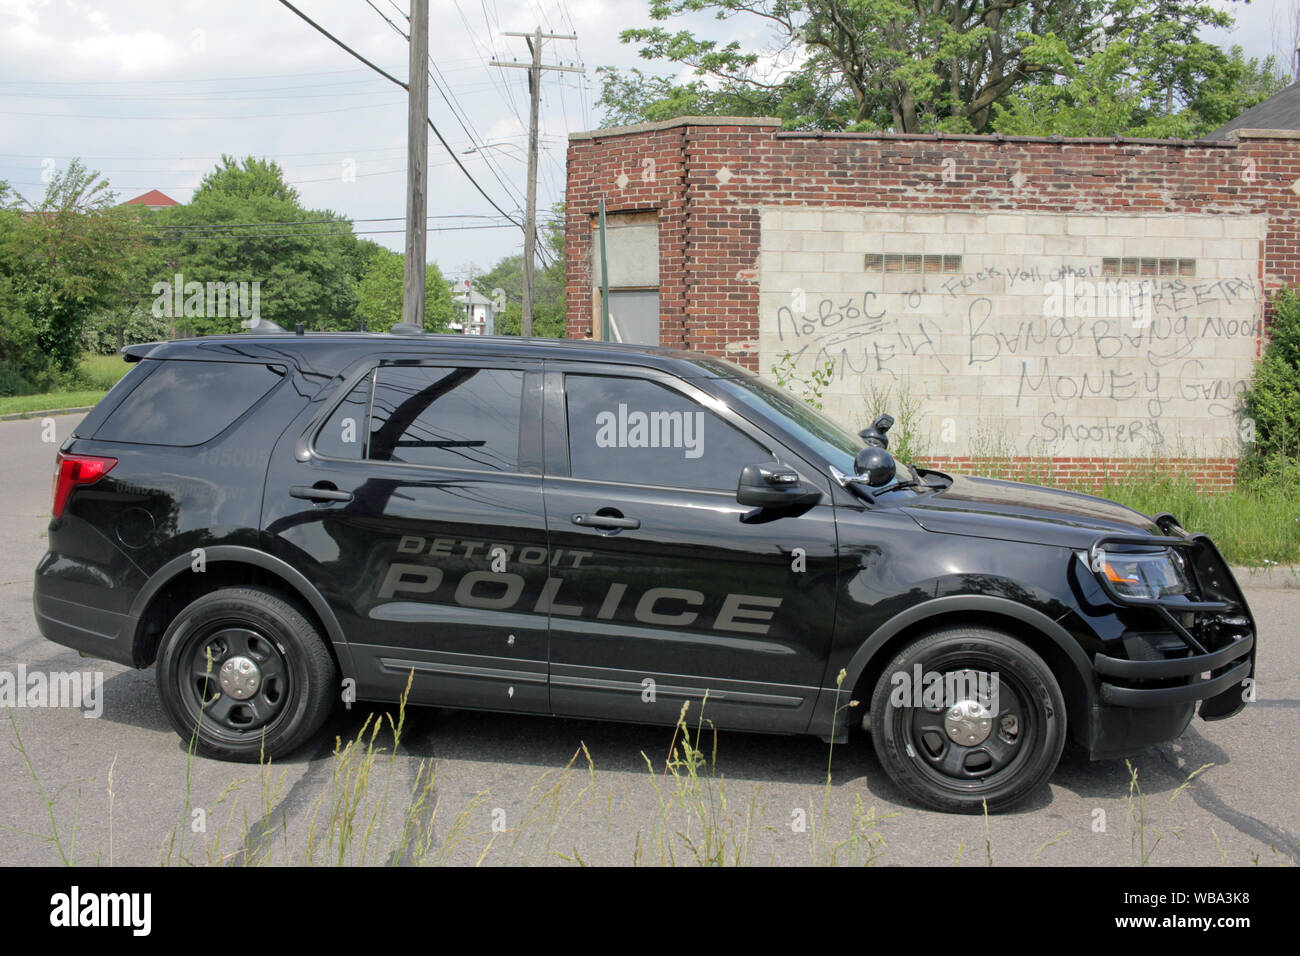 Detroit Police Department Schleifring Durchsetzung Fahrzeug von einer Wand in Gang Graffiti, Detroit, Michigan, USA Stockfoto